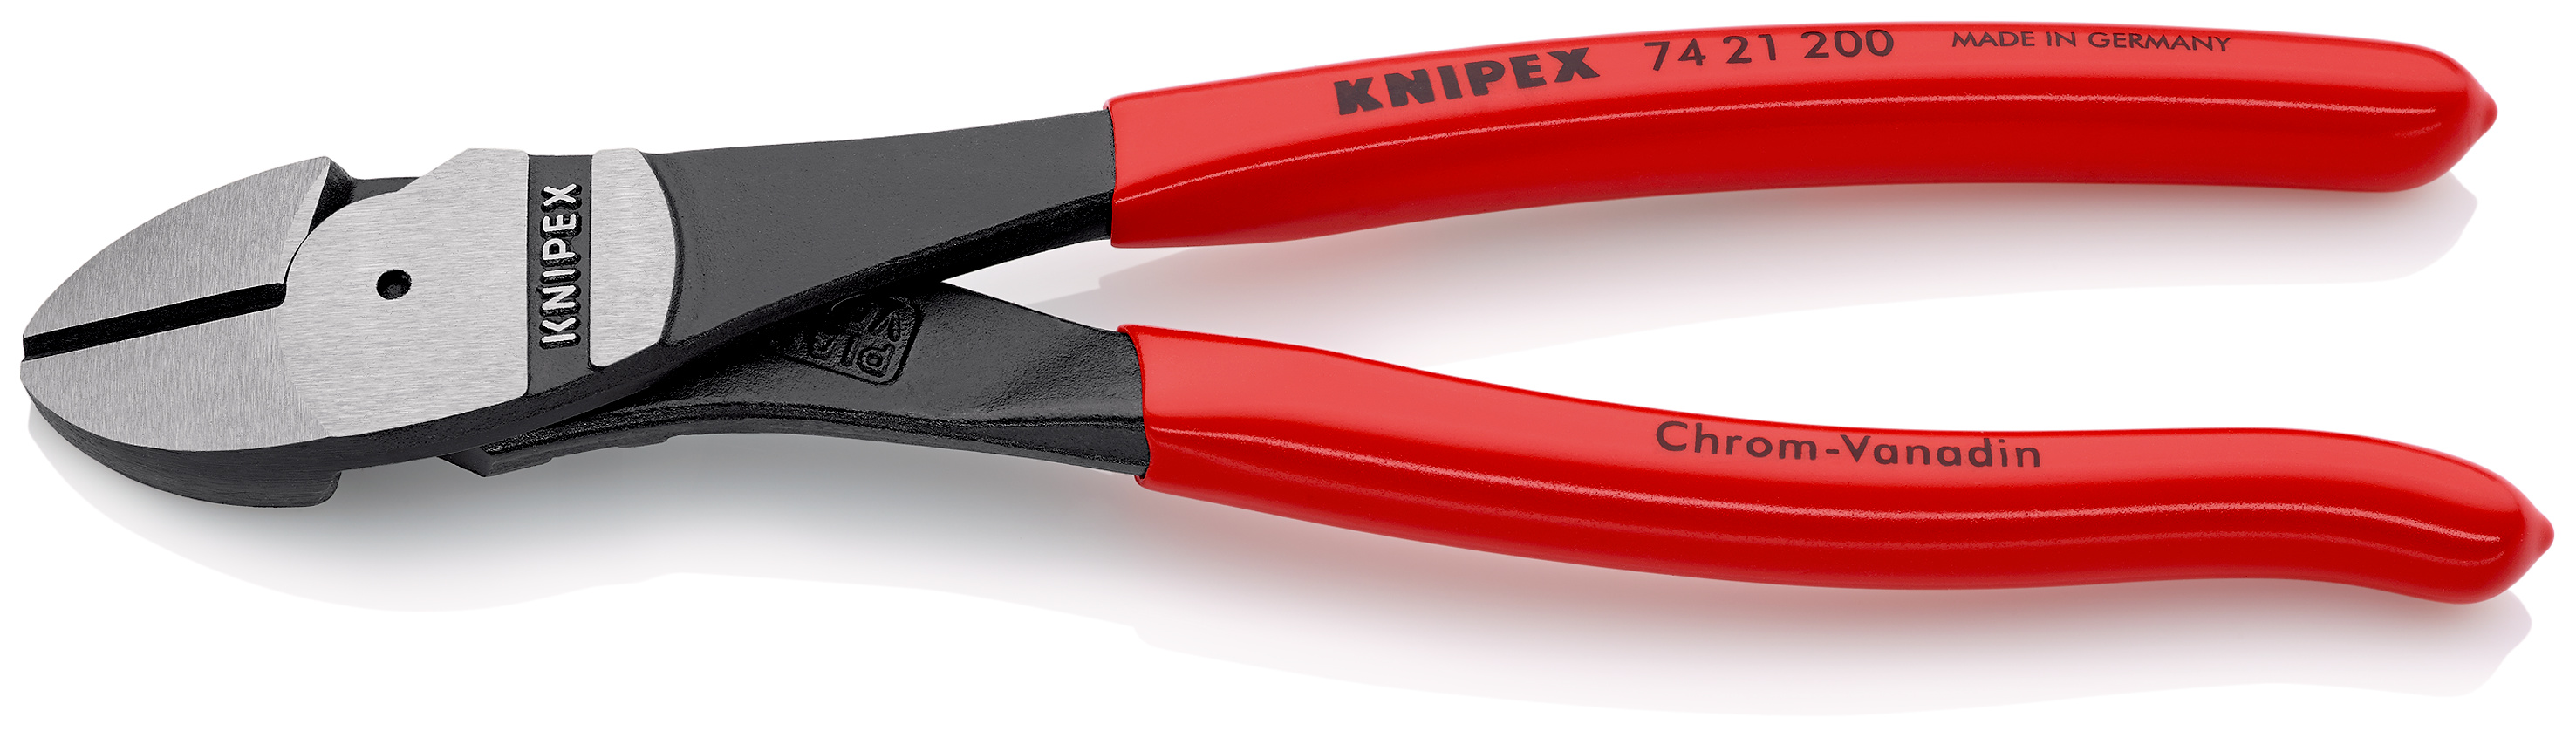 クニペックス KNIPEX 9911-250 強力型喰い切り SB 9911250 ZKmzhEmtSr, DIY、工具 - pci.edu.pe